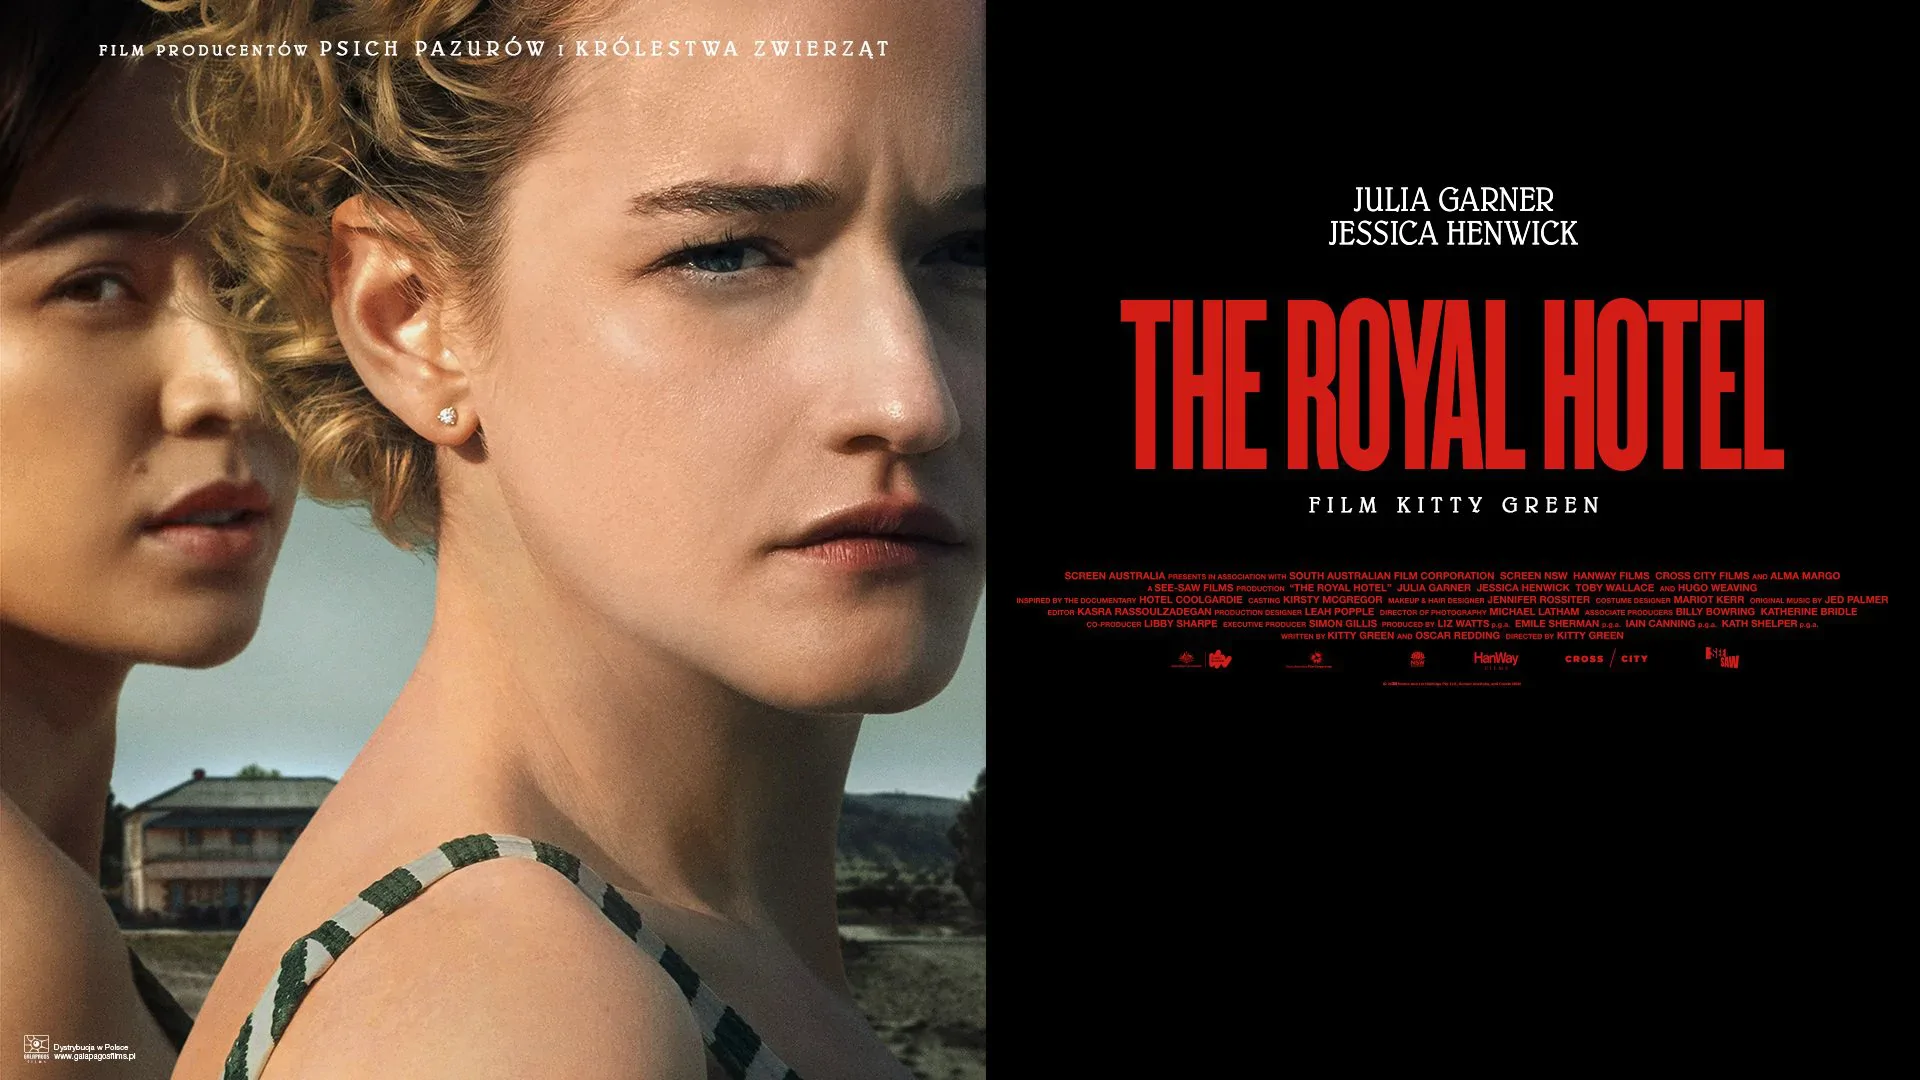 Zwiedź The Royal Hotel! Nowy thriller z Julią Garner i Jessicą Henwick